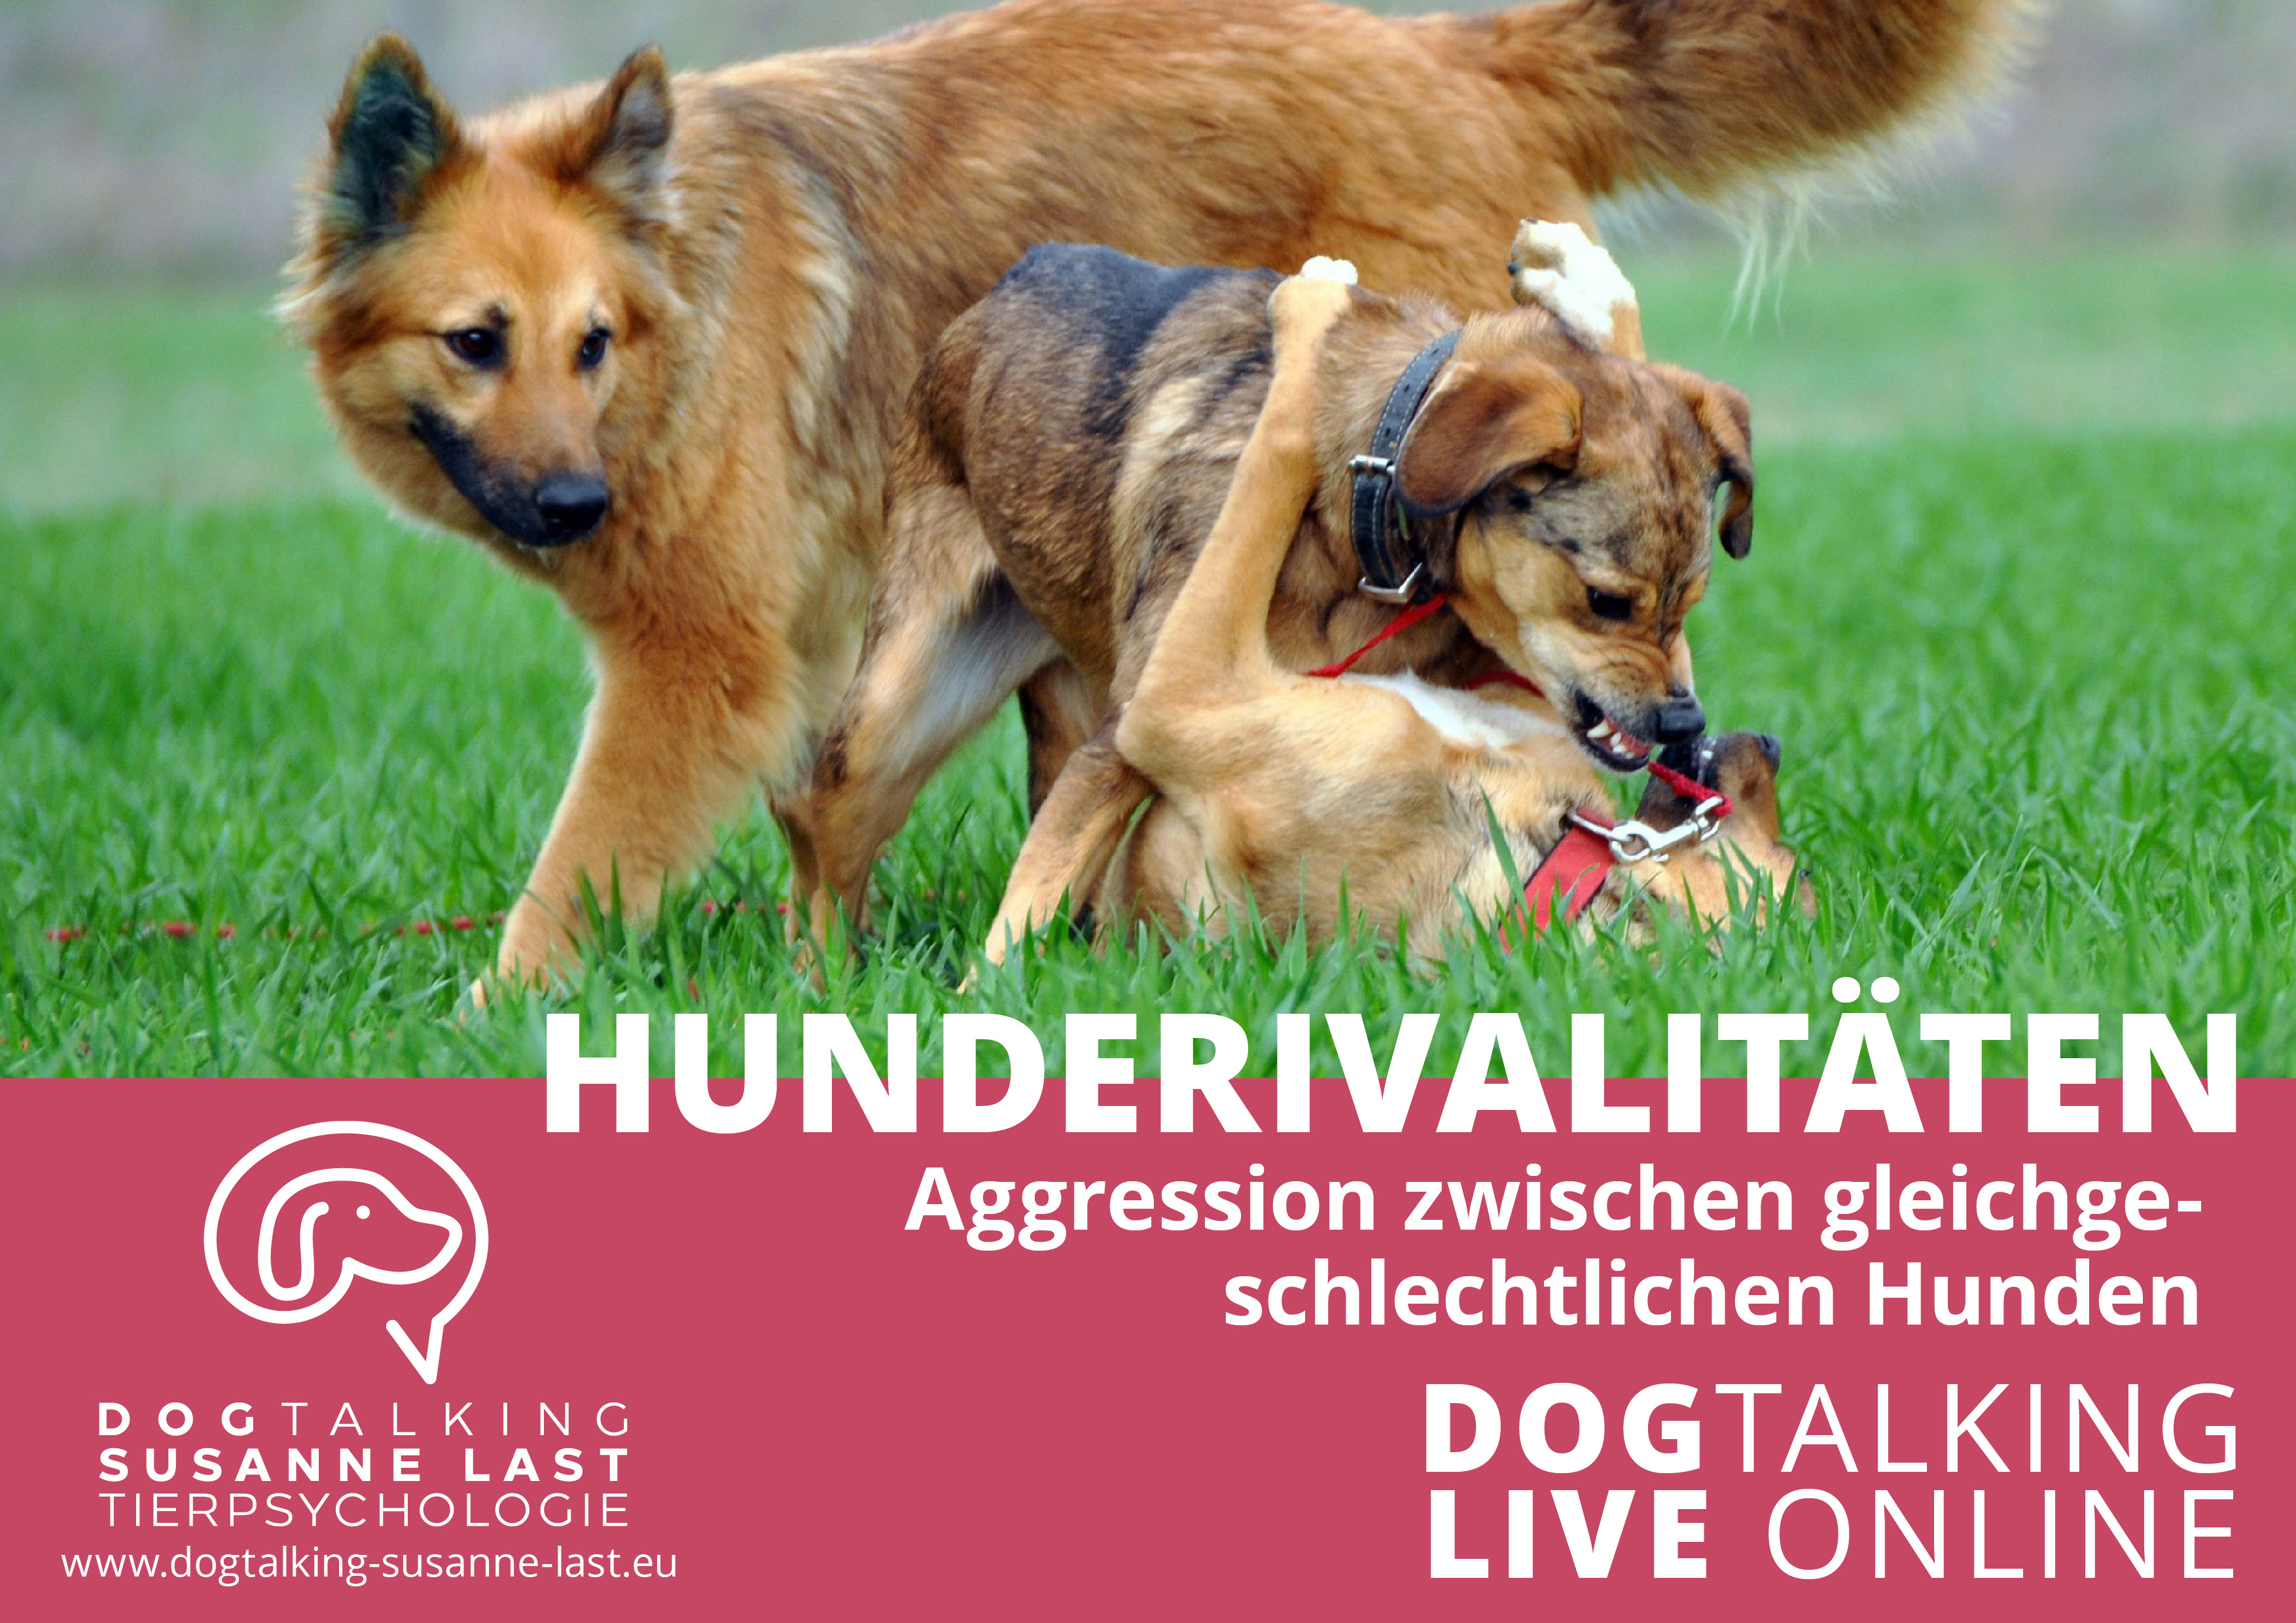 Hunderivalitäten: Aggression unter gleichgeschlechtlichen Hunden - DOGTALKING live online Aufzeichnung